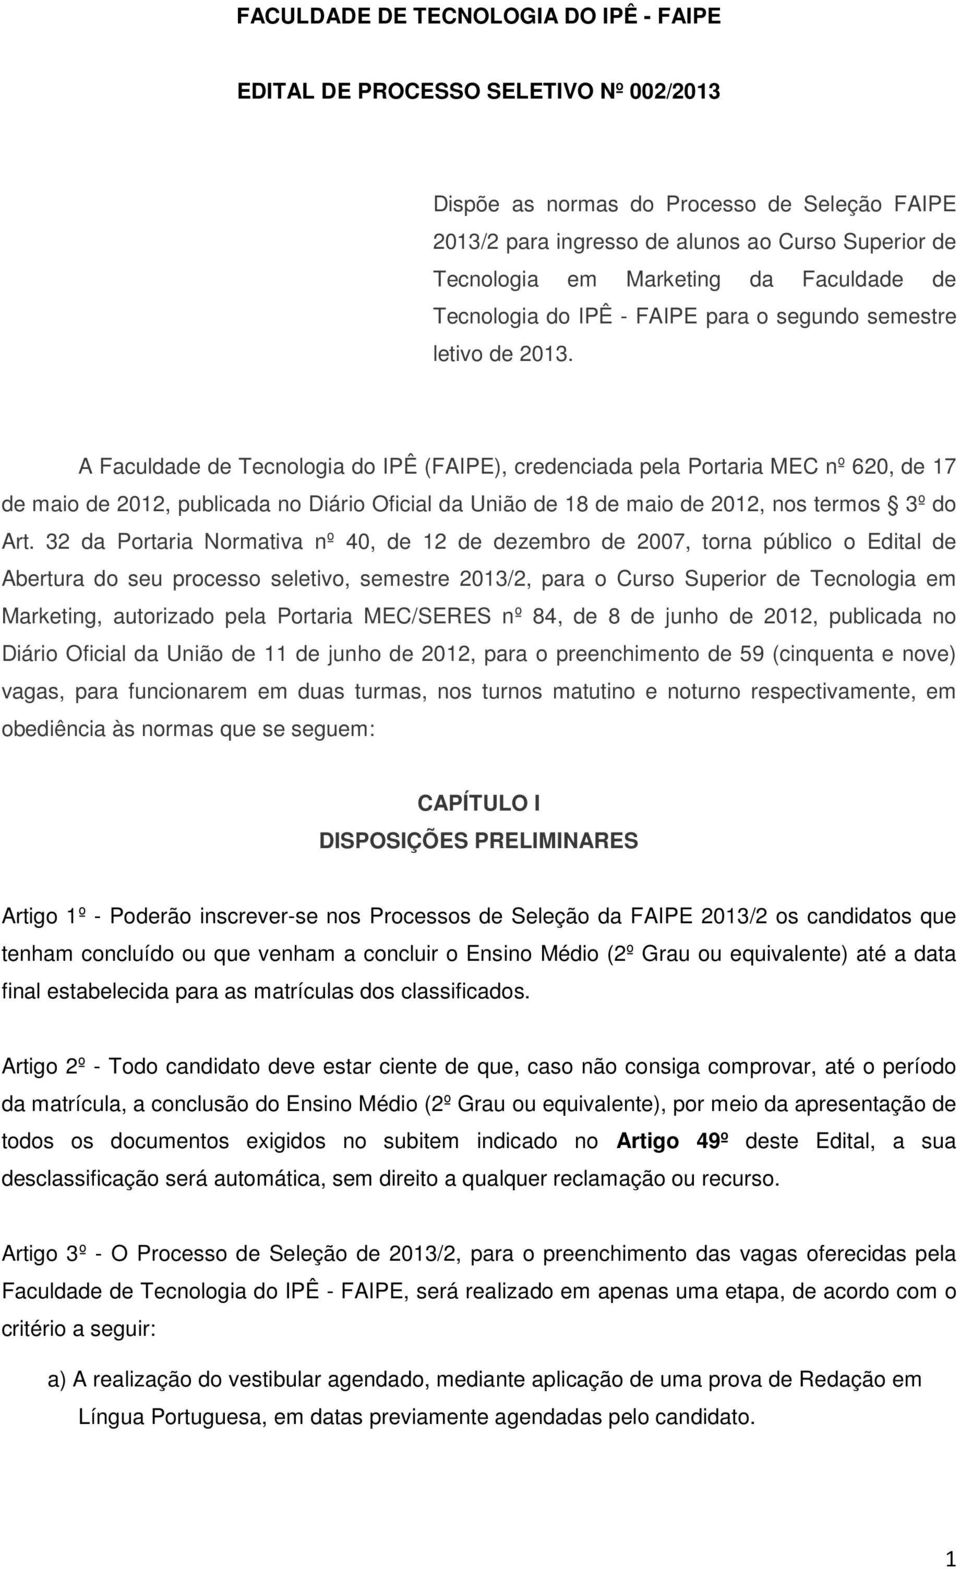 A Faculdade de Tecnologia do IPÊ (FAIPE), credenciada pela Portaria MEC nº 620, de 17 de maio de 2012, publicada no Diário Oficial da União de 18 de maio de 2012, nos termos 3º do Art.